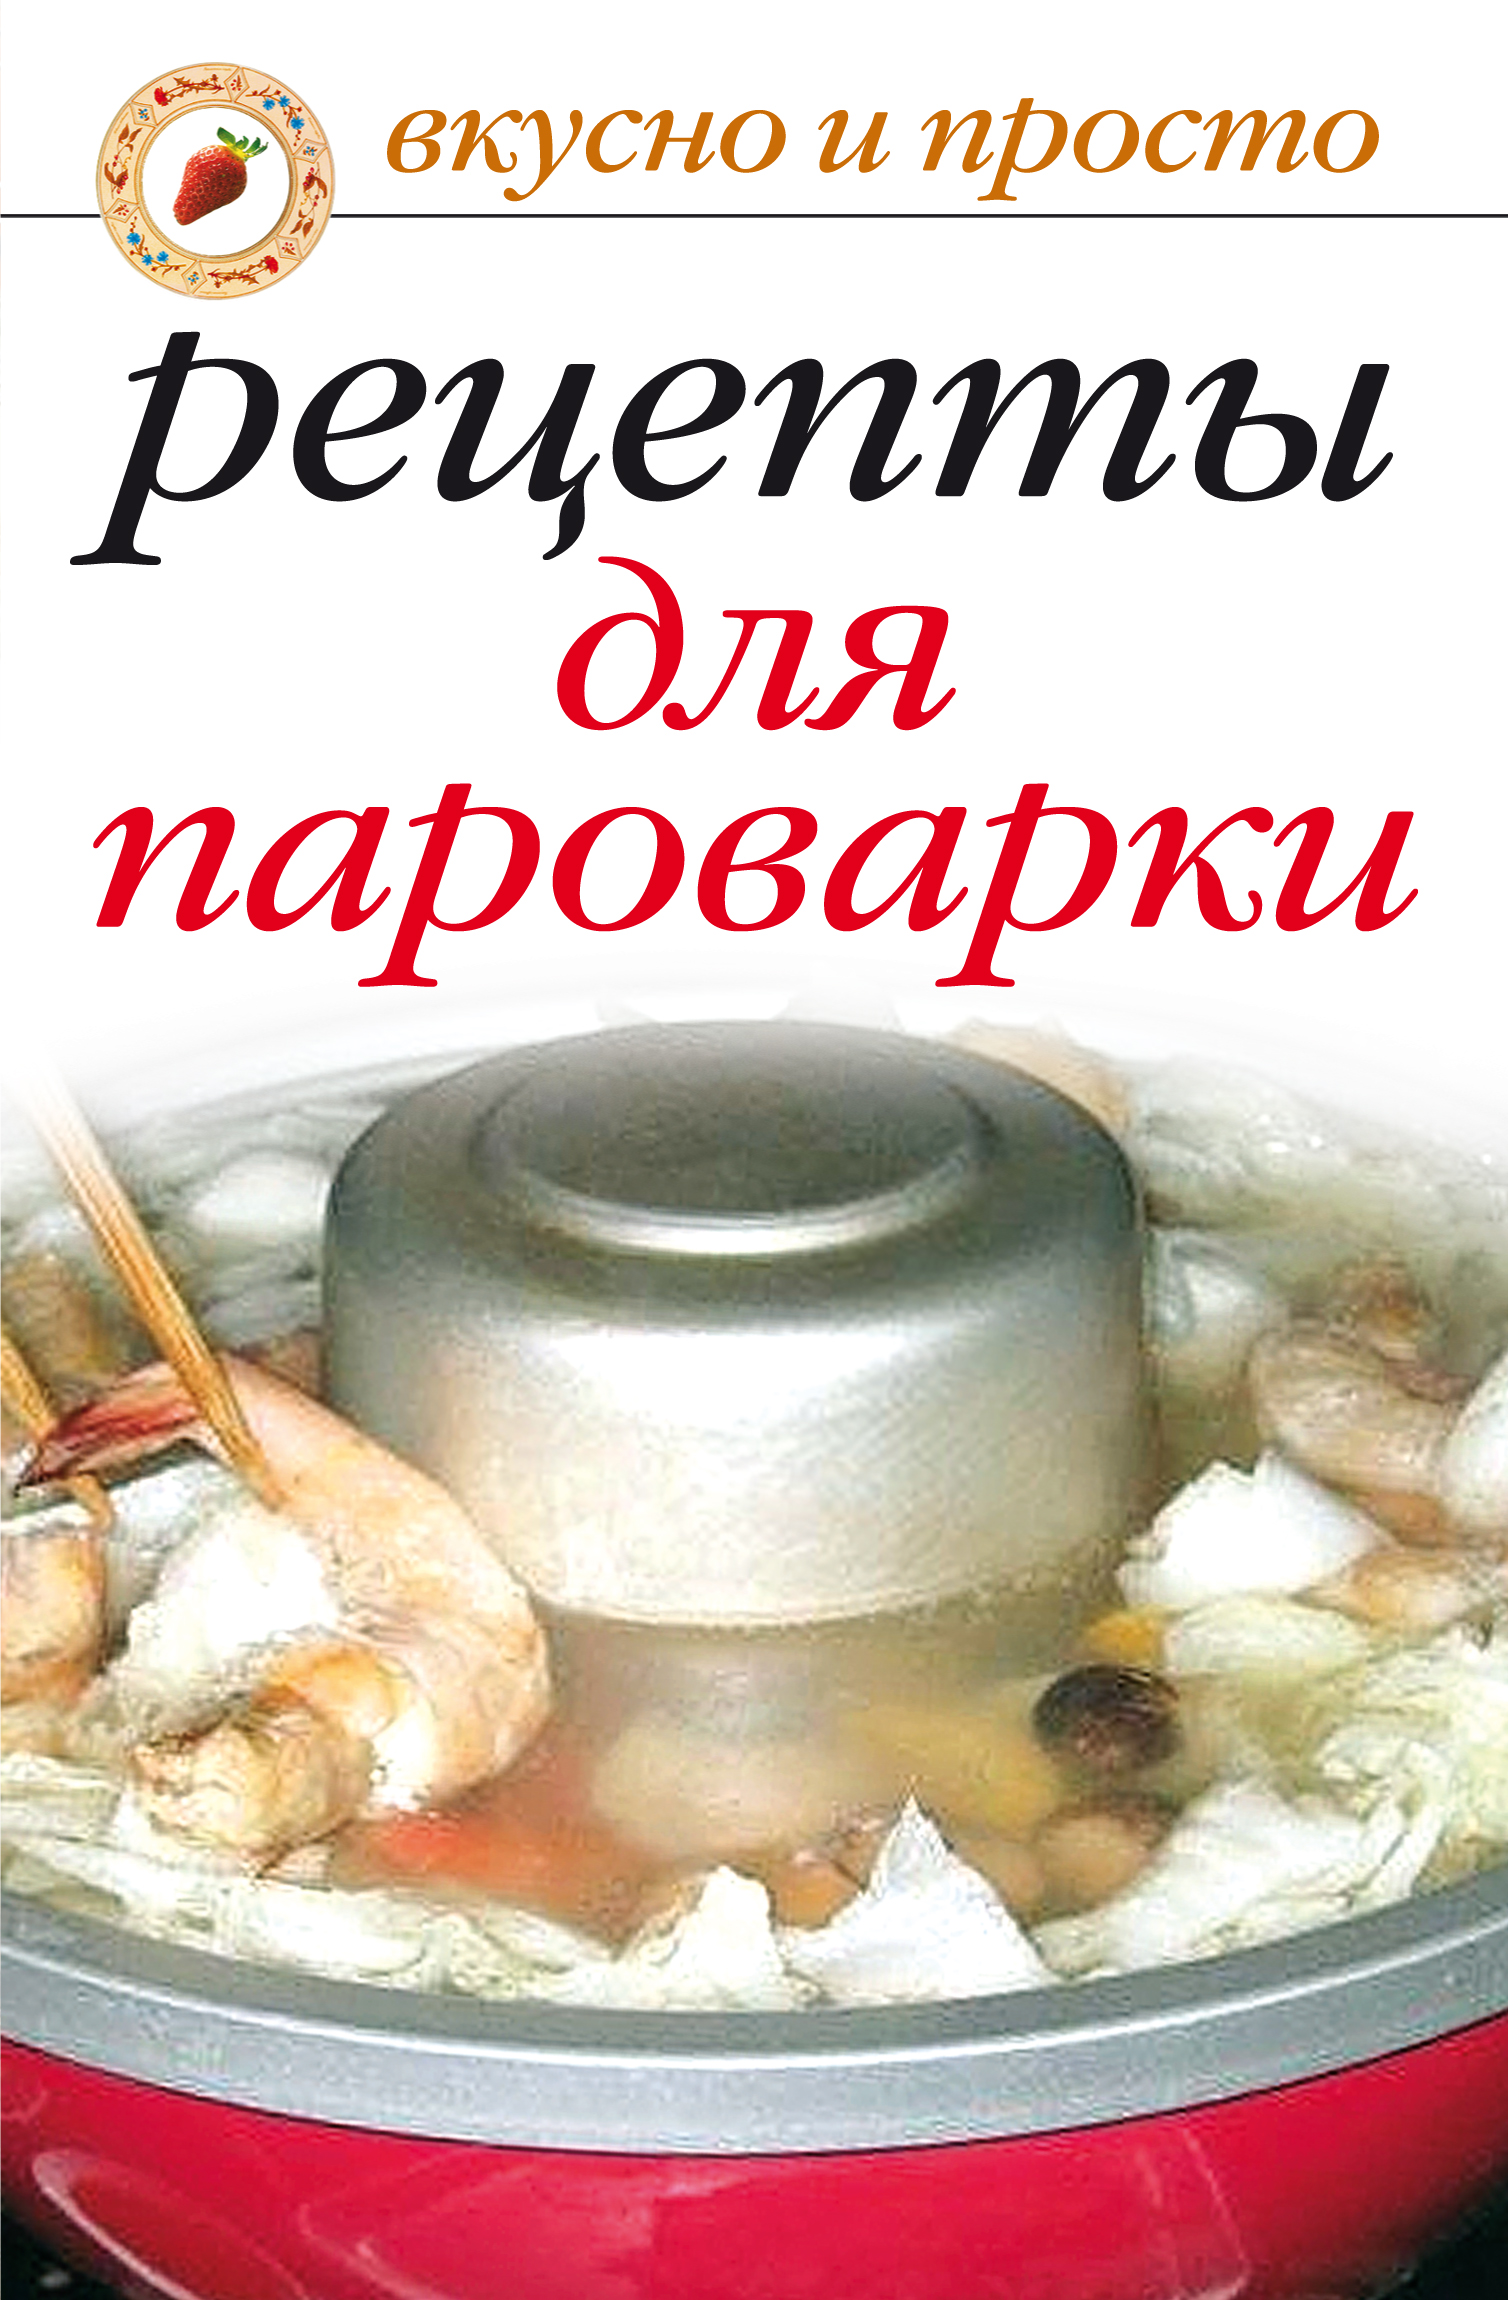 Книга Рецепты для пароварки из серии , созданная Ирина Перова, может относится к жанру Кулинария. Стоимость электронной книги Рецепты для пароварки с идентификатором 300082 составляет 29.00 руб.